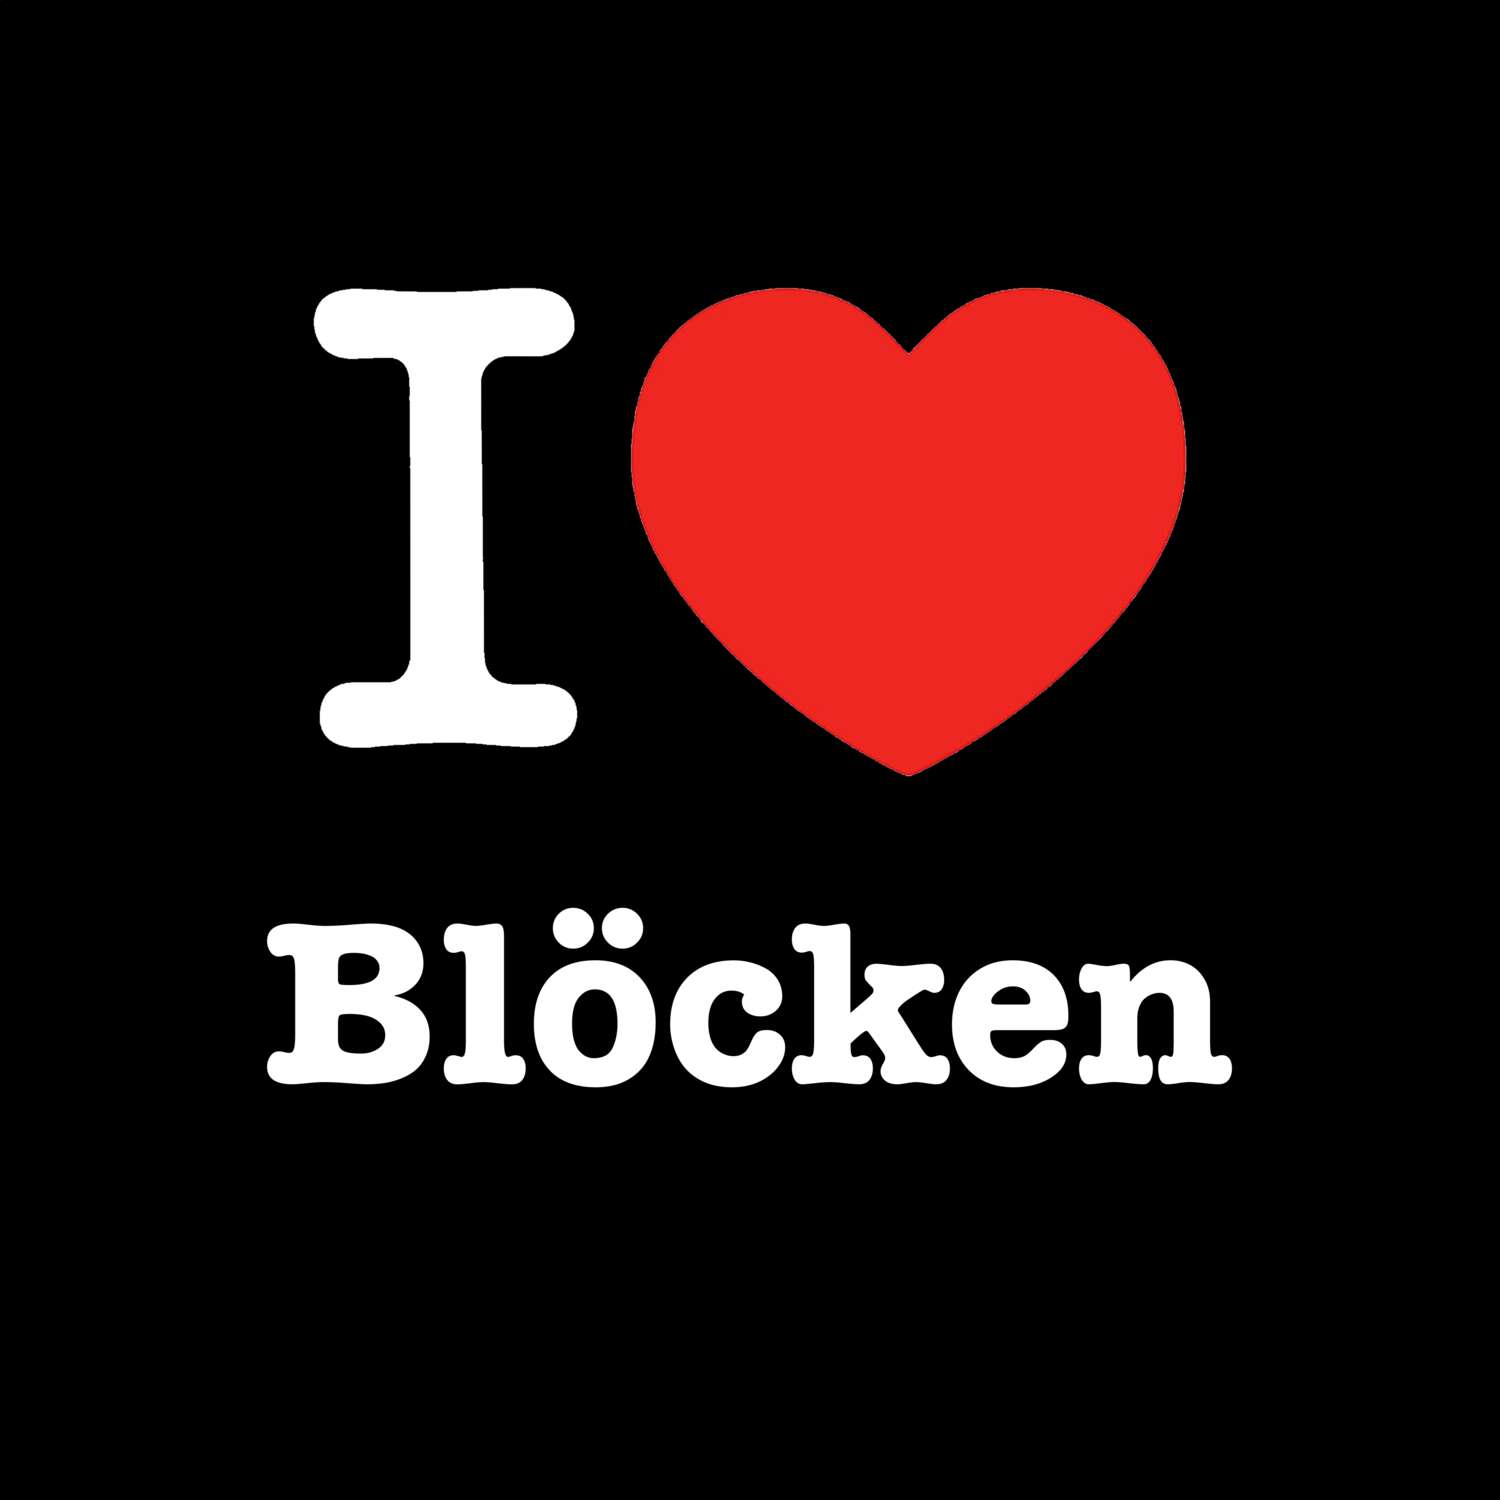 Blöcken T-Shirt »I love«